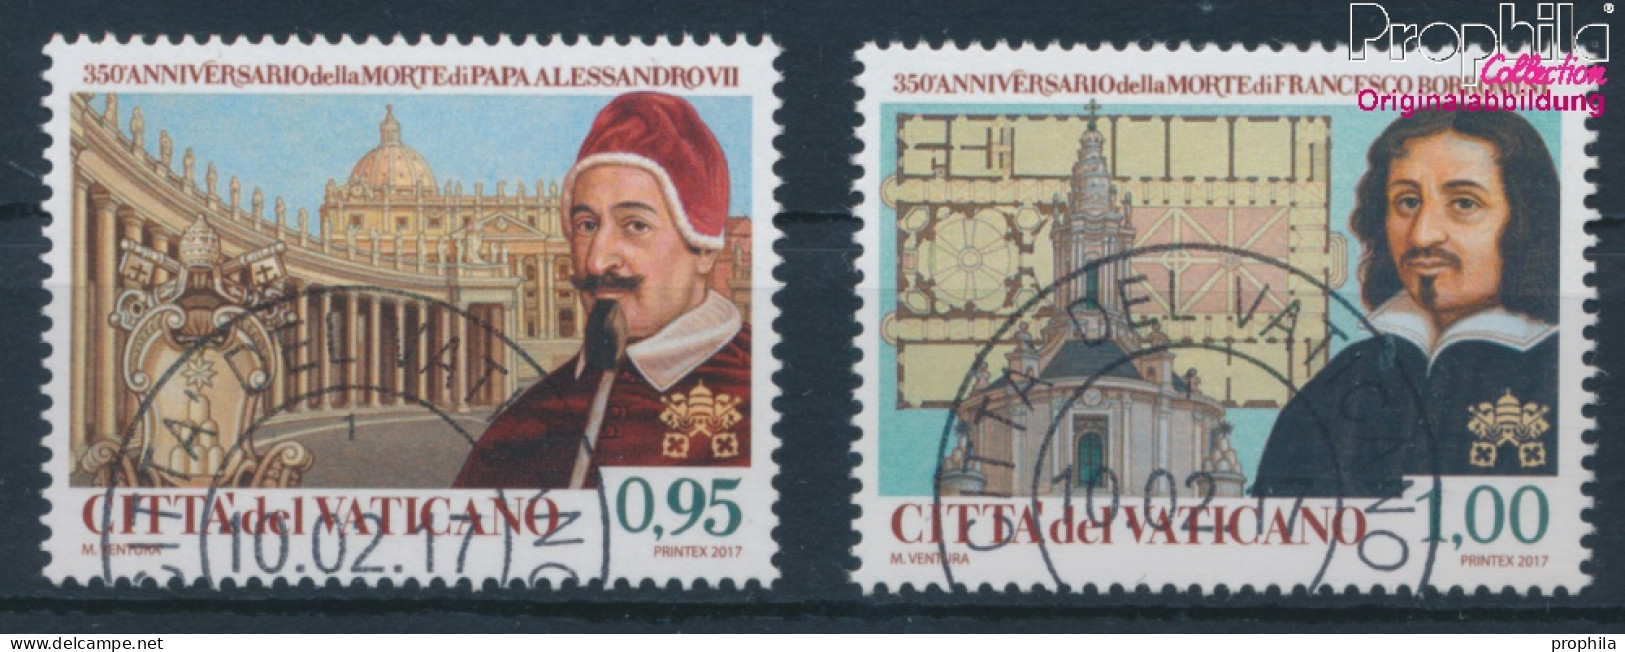 Vatikanstadt 1896-1897 (kompl.Ausg.) Gestempelt 2017 Papst Alexander VII. (10405954 - Usati